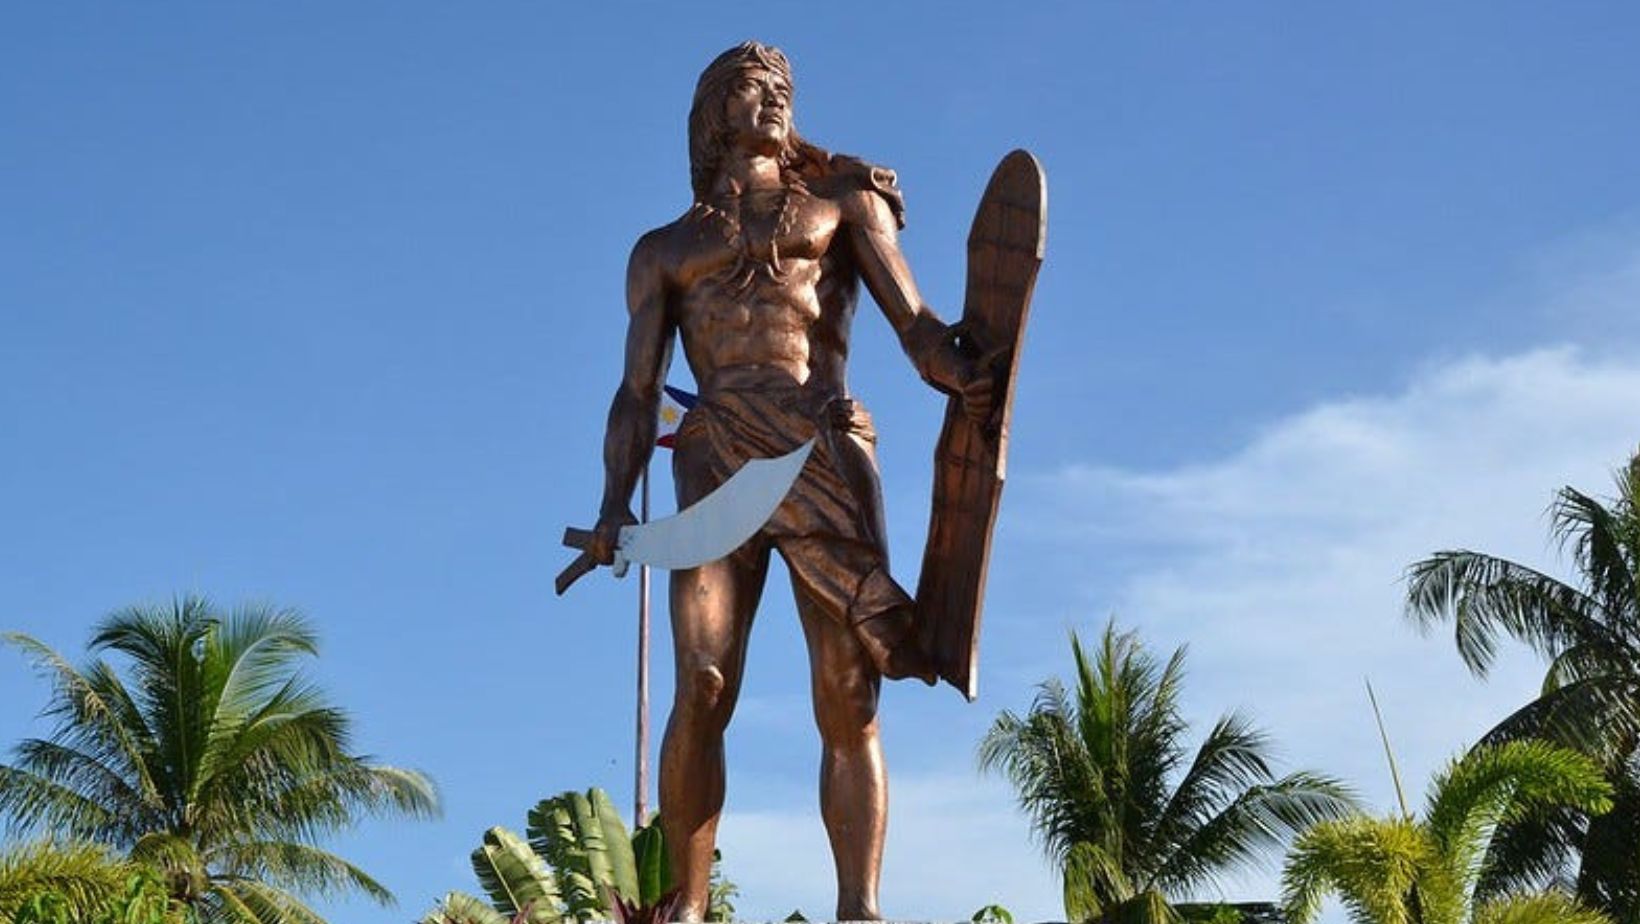 Chief Lapu-Lapu - Warrior and Hero of the Philippines